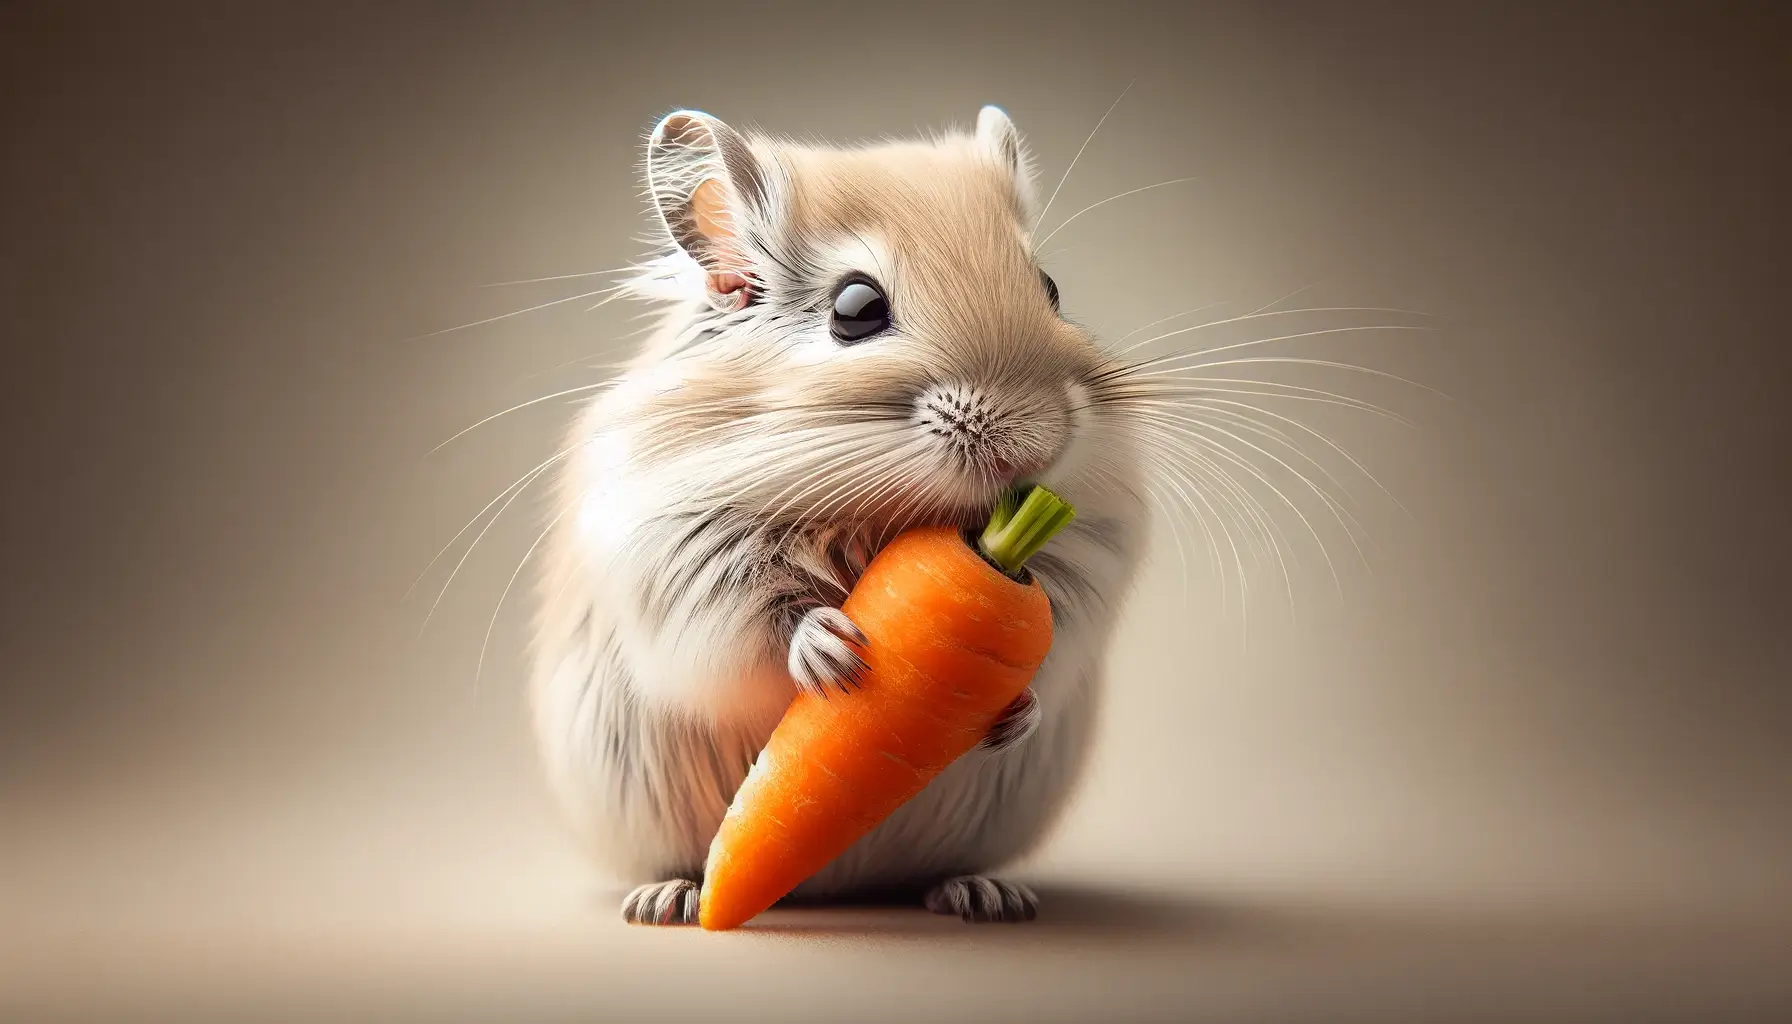 can gerbils eat carrots